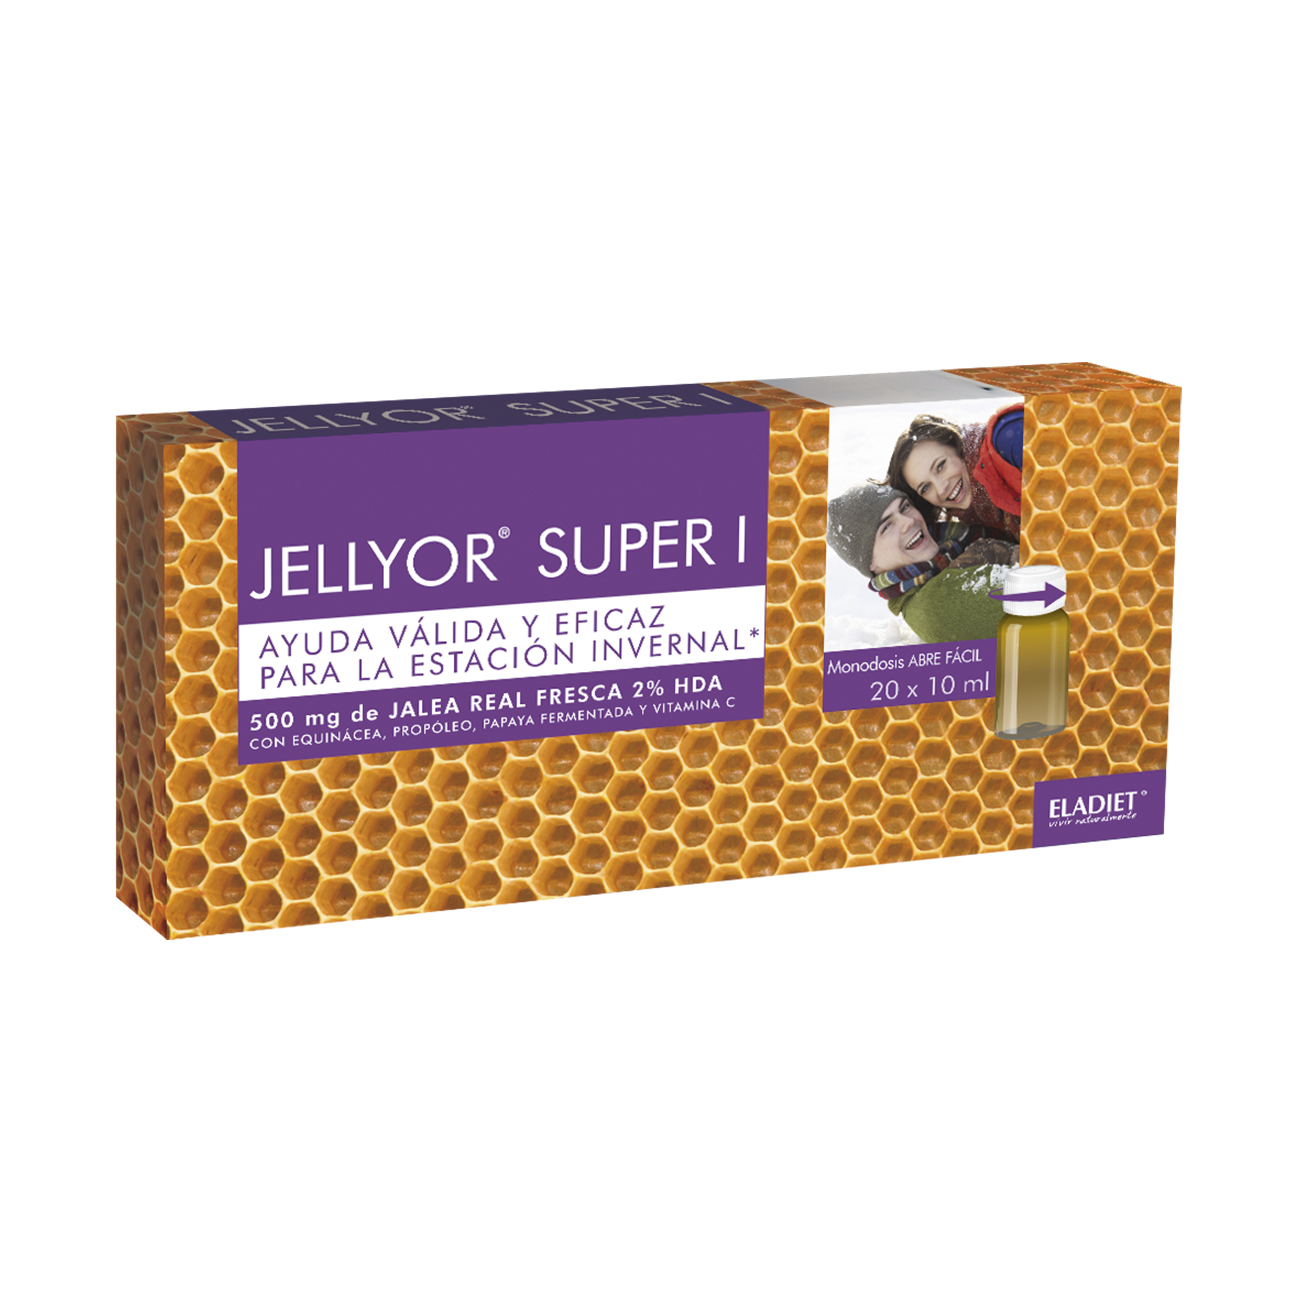 Jellyor Super I